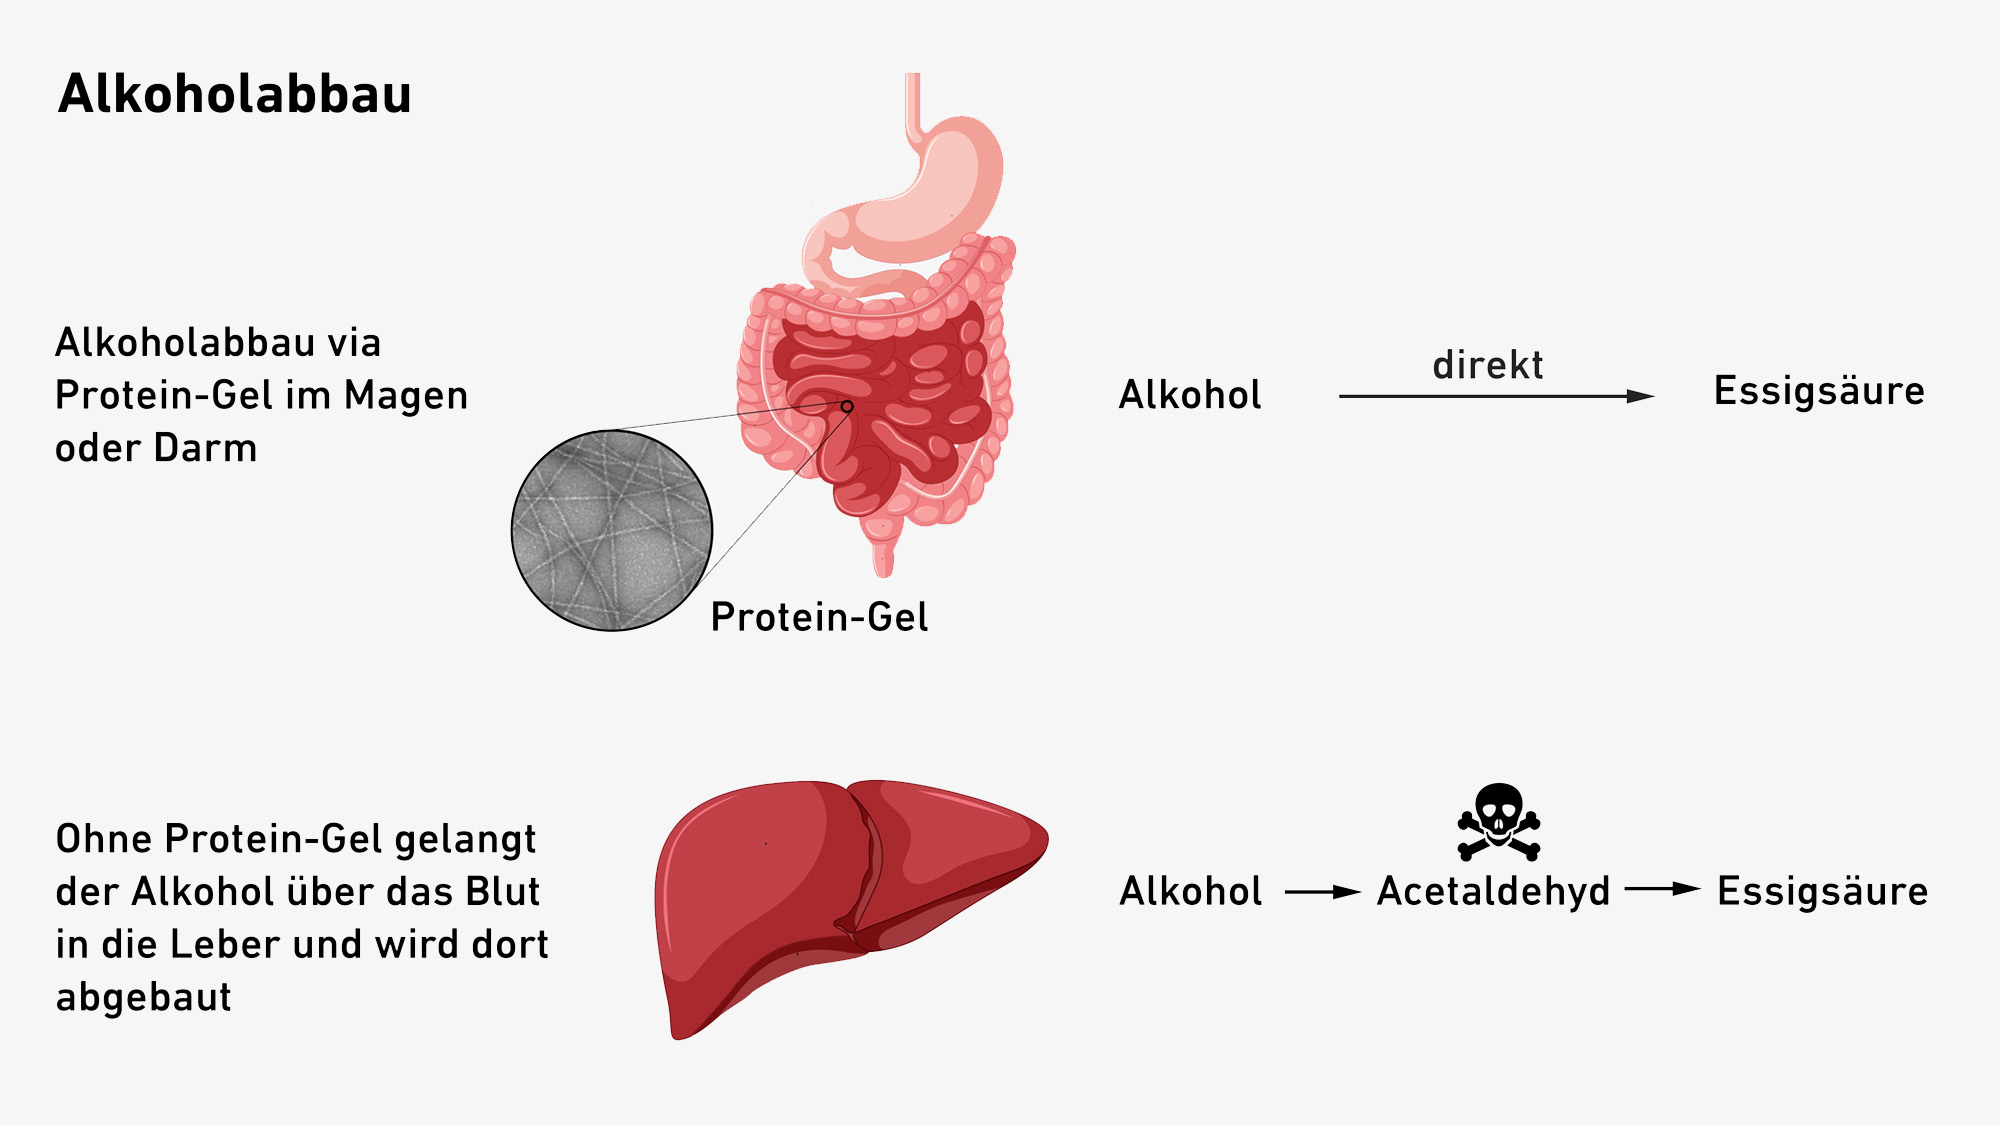 Vergrösserte Ansicht: Die Darstellung zeit wie der Alkohol via das Protein-Gel im Magen oder Darm abgebaut wird. Ohne das Protein-Gel gelangt der Alkohol über das Blut in die Leber und wird dort abgebaut.